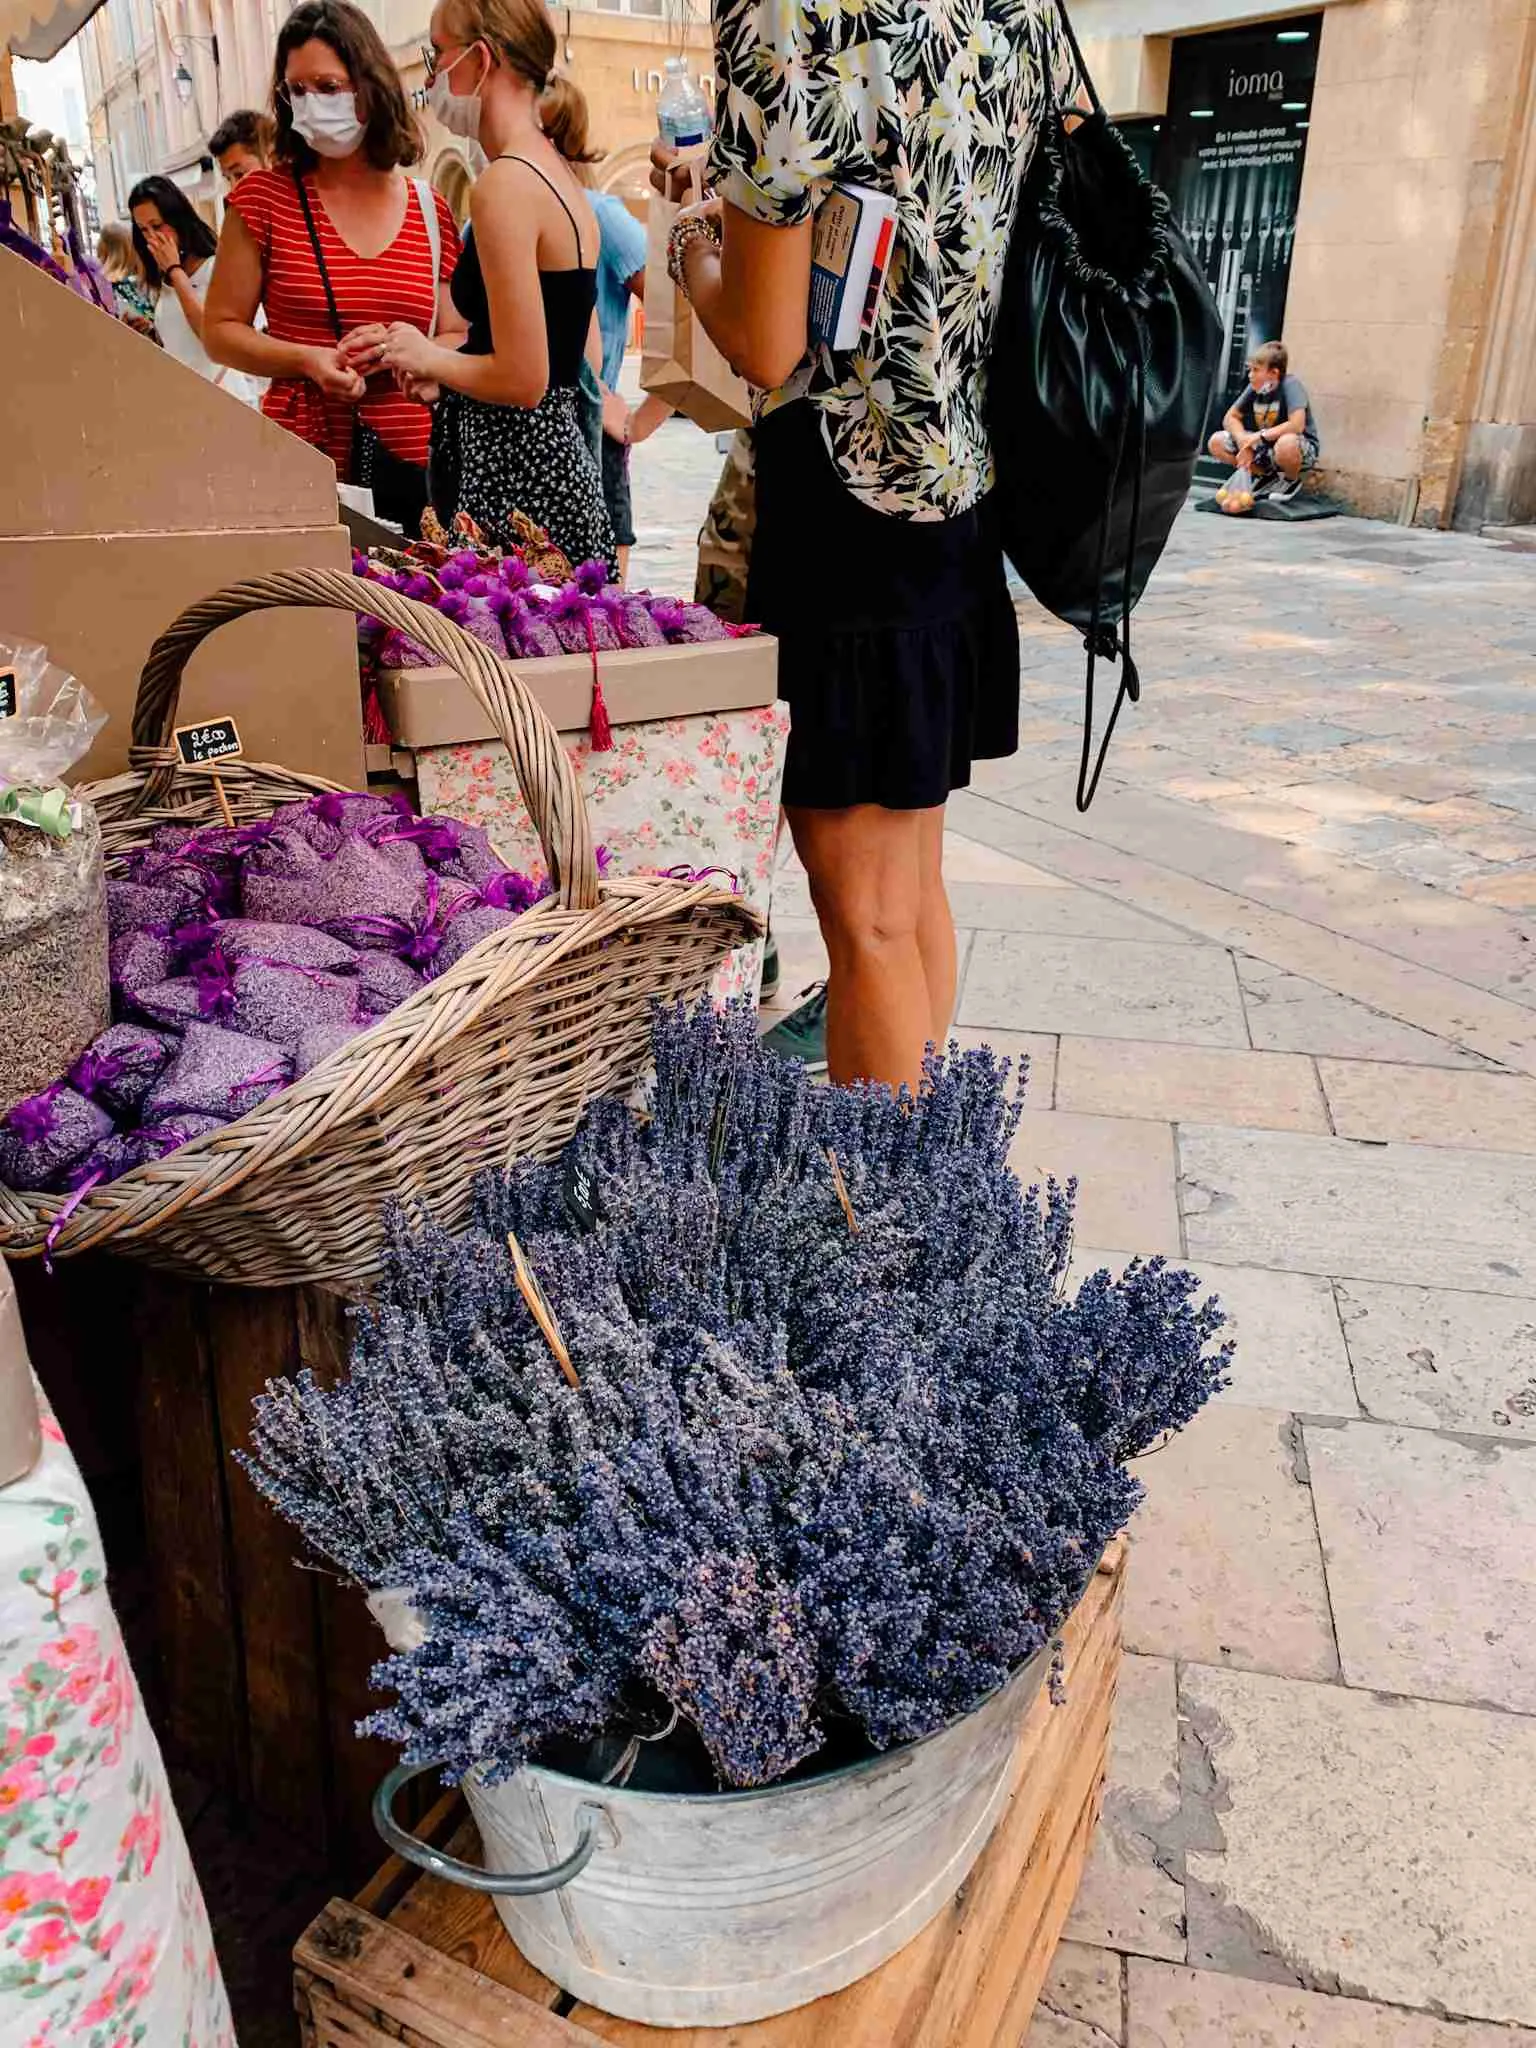 A bushel of lavender from Aix en Provence 